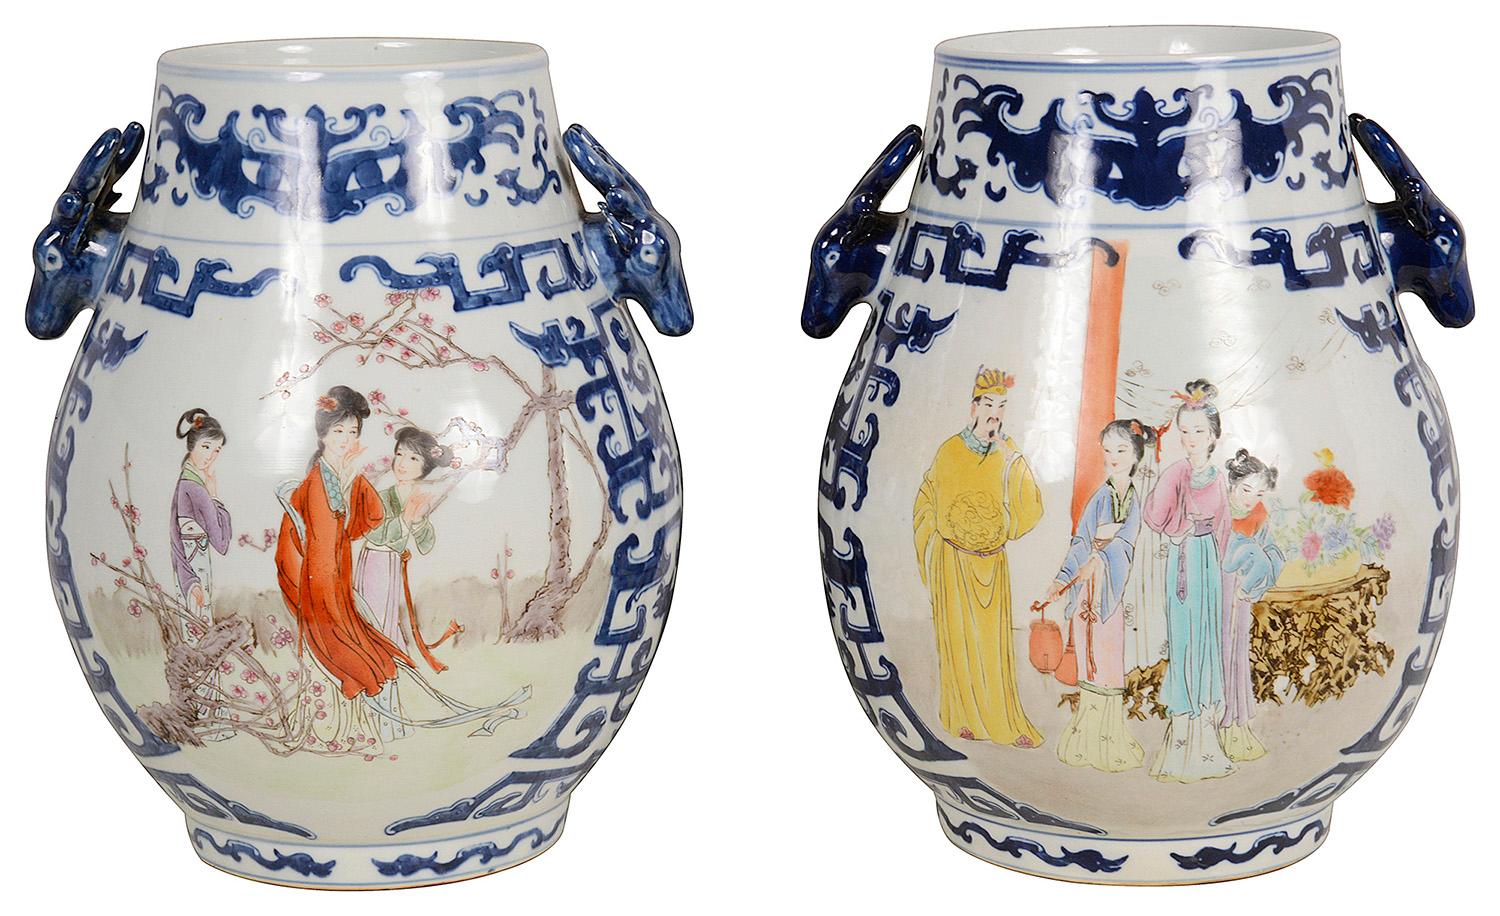 Une paire très décorative de vases / lampes en porcelaine chinoise du 20ème siècle.
Chacune avec des bordures à décor de motifs classiques de couleur bleue et des poignées en forme de tête de cerf, des panneaux peints à la main en médaillon